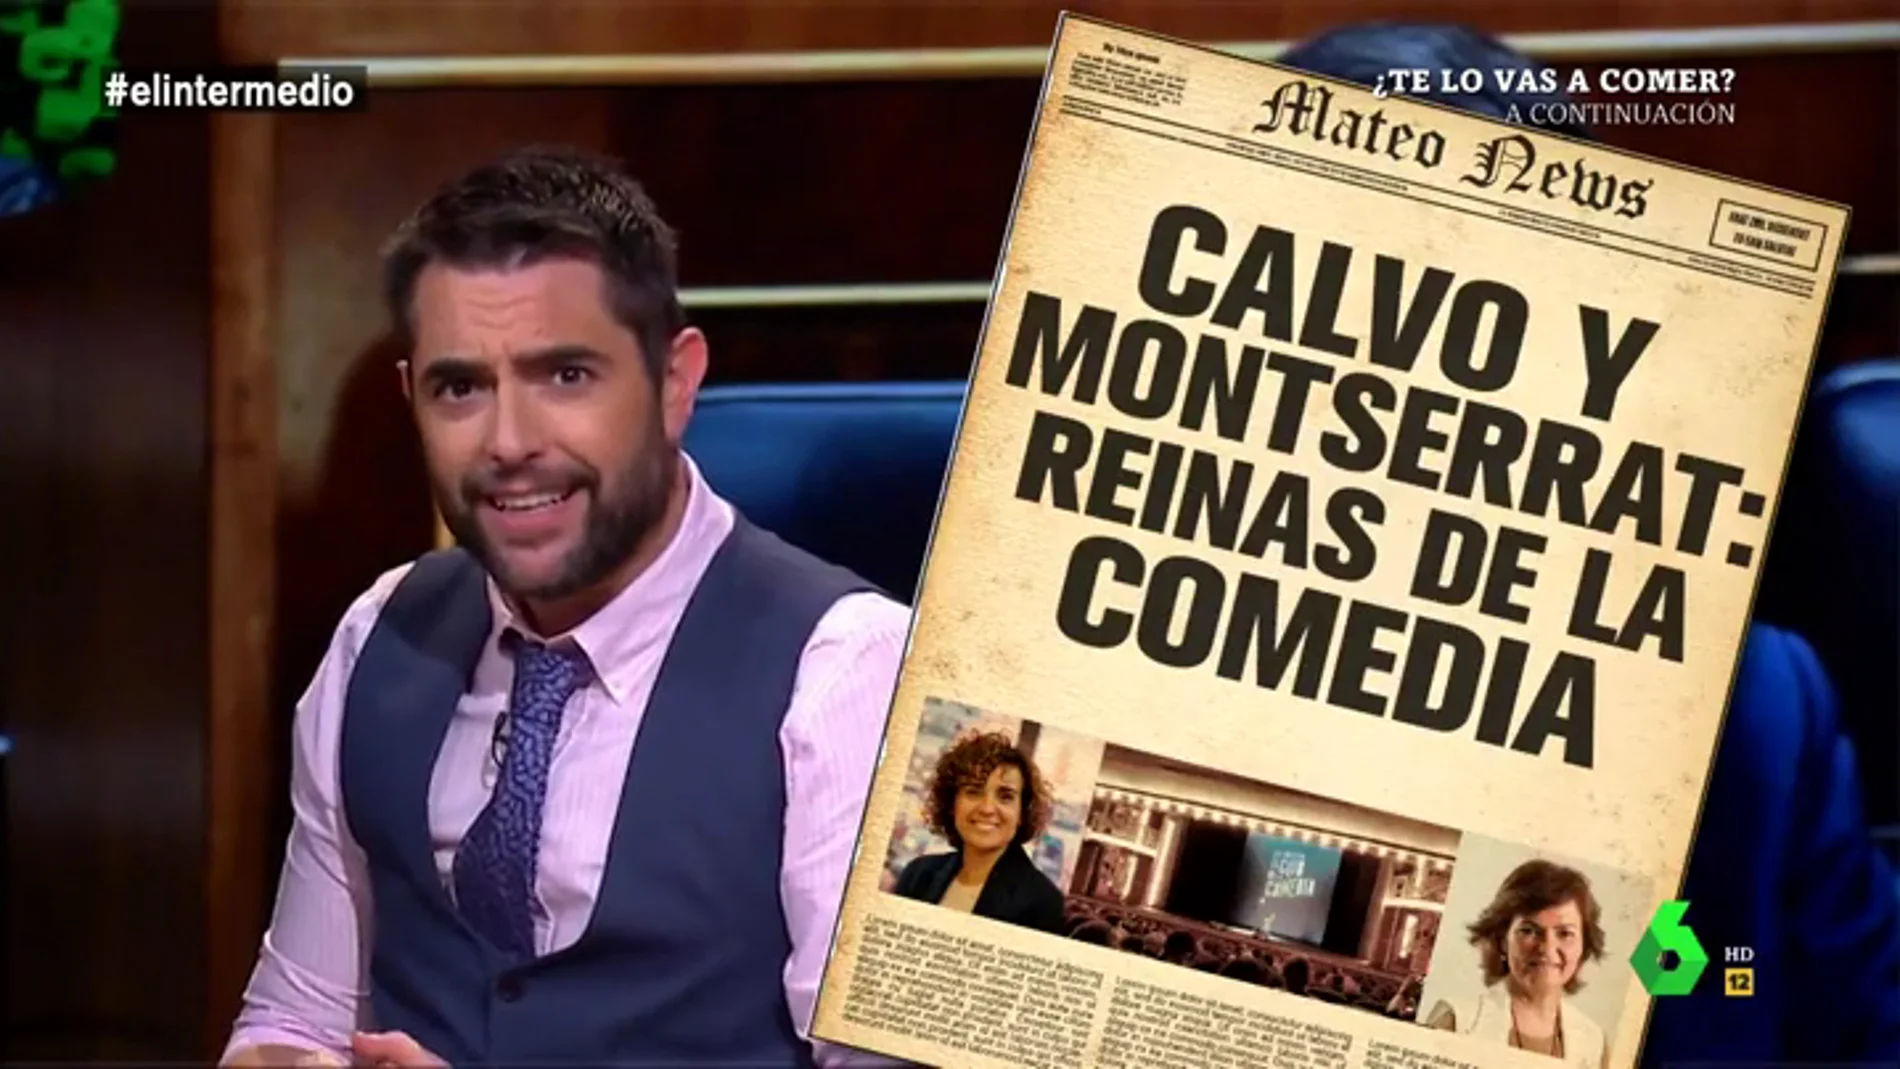 Calvo y Montserrat, las "reinas" de la comedia